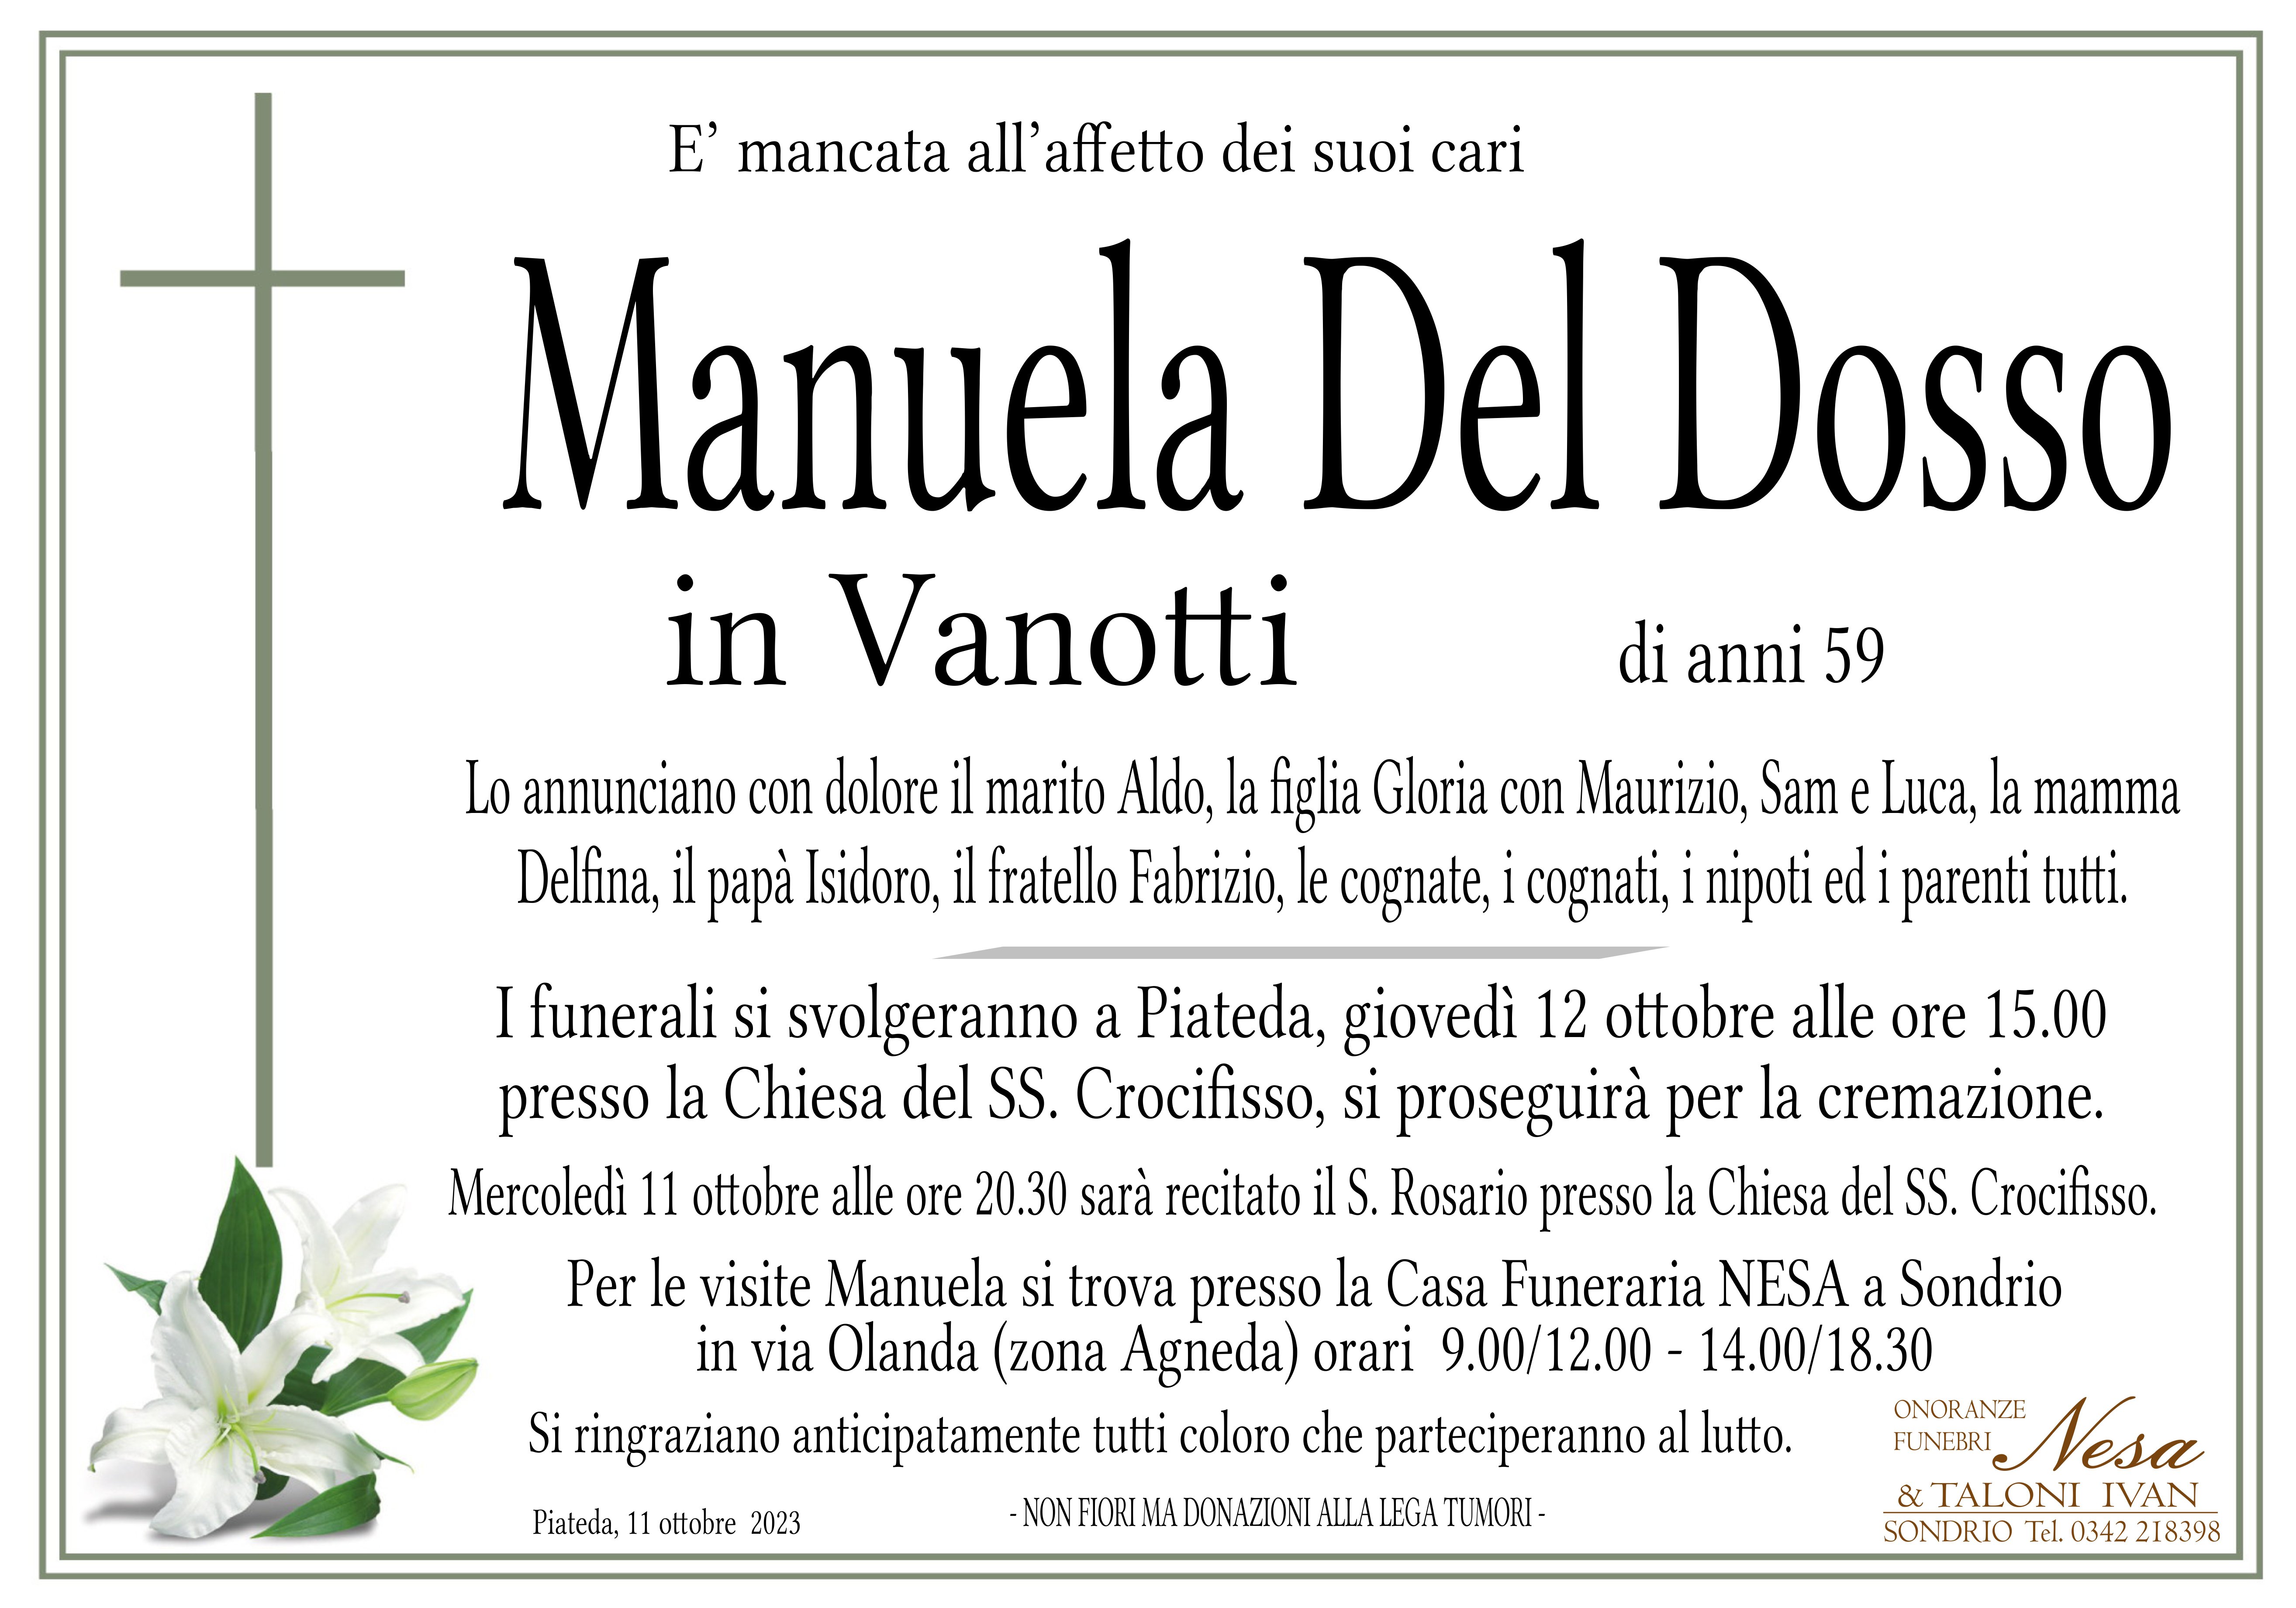 Necrologio Manuela Del Dosso in Vanotti